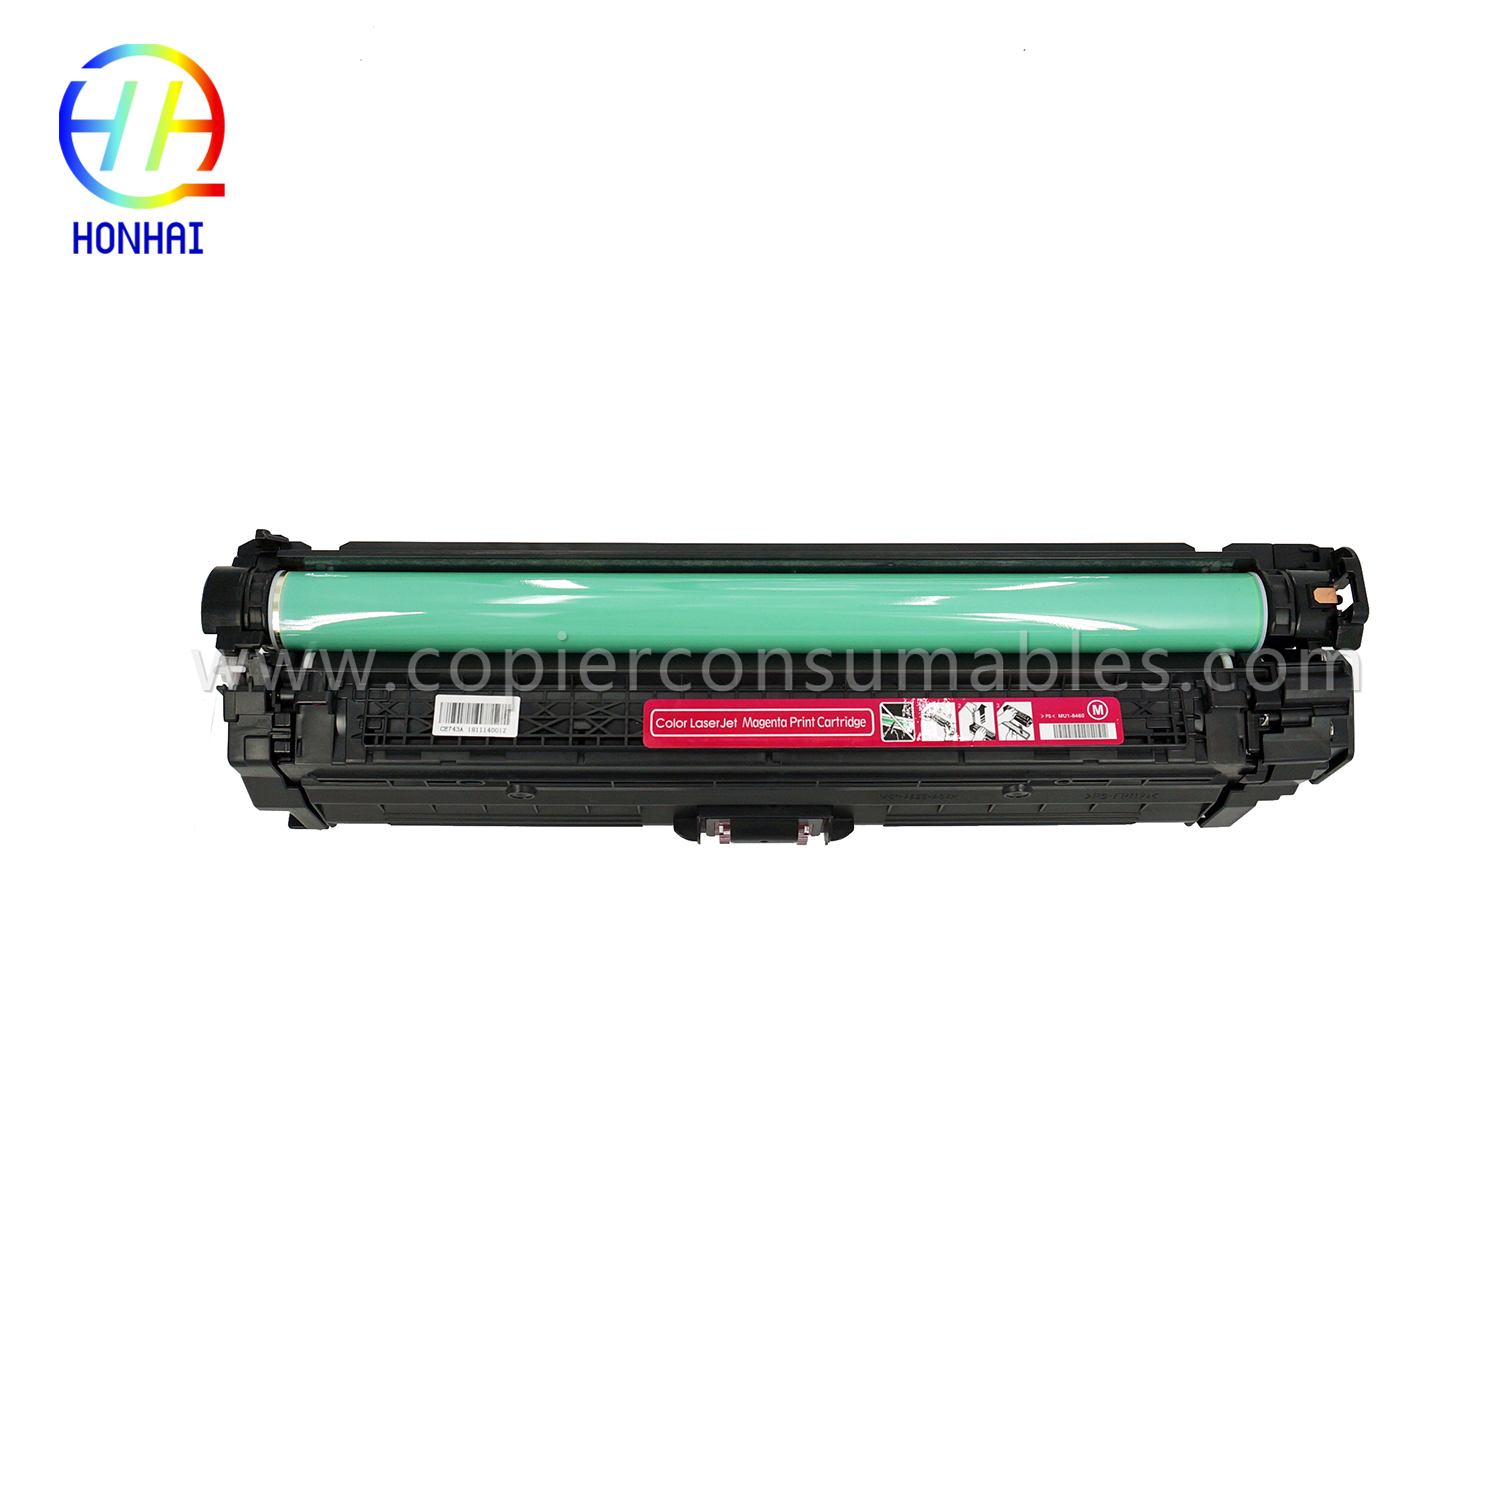 Toner Cartouche fir HP Color LaserJet Pro CP5025 CP5220 CP5225 CE743A 307A